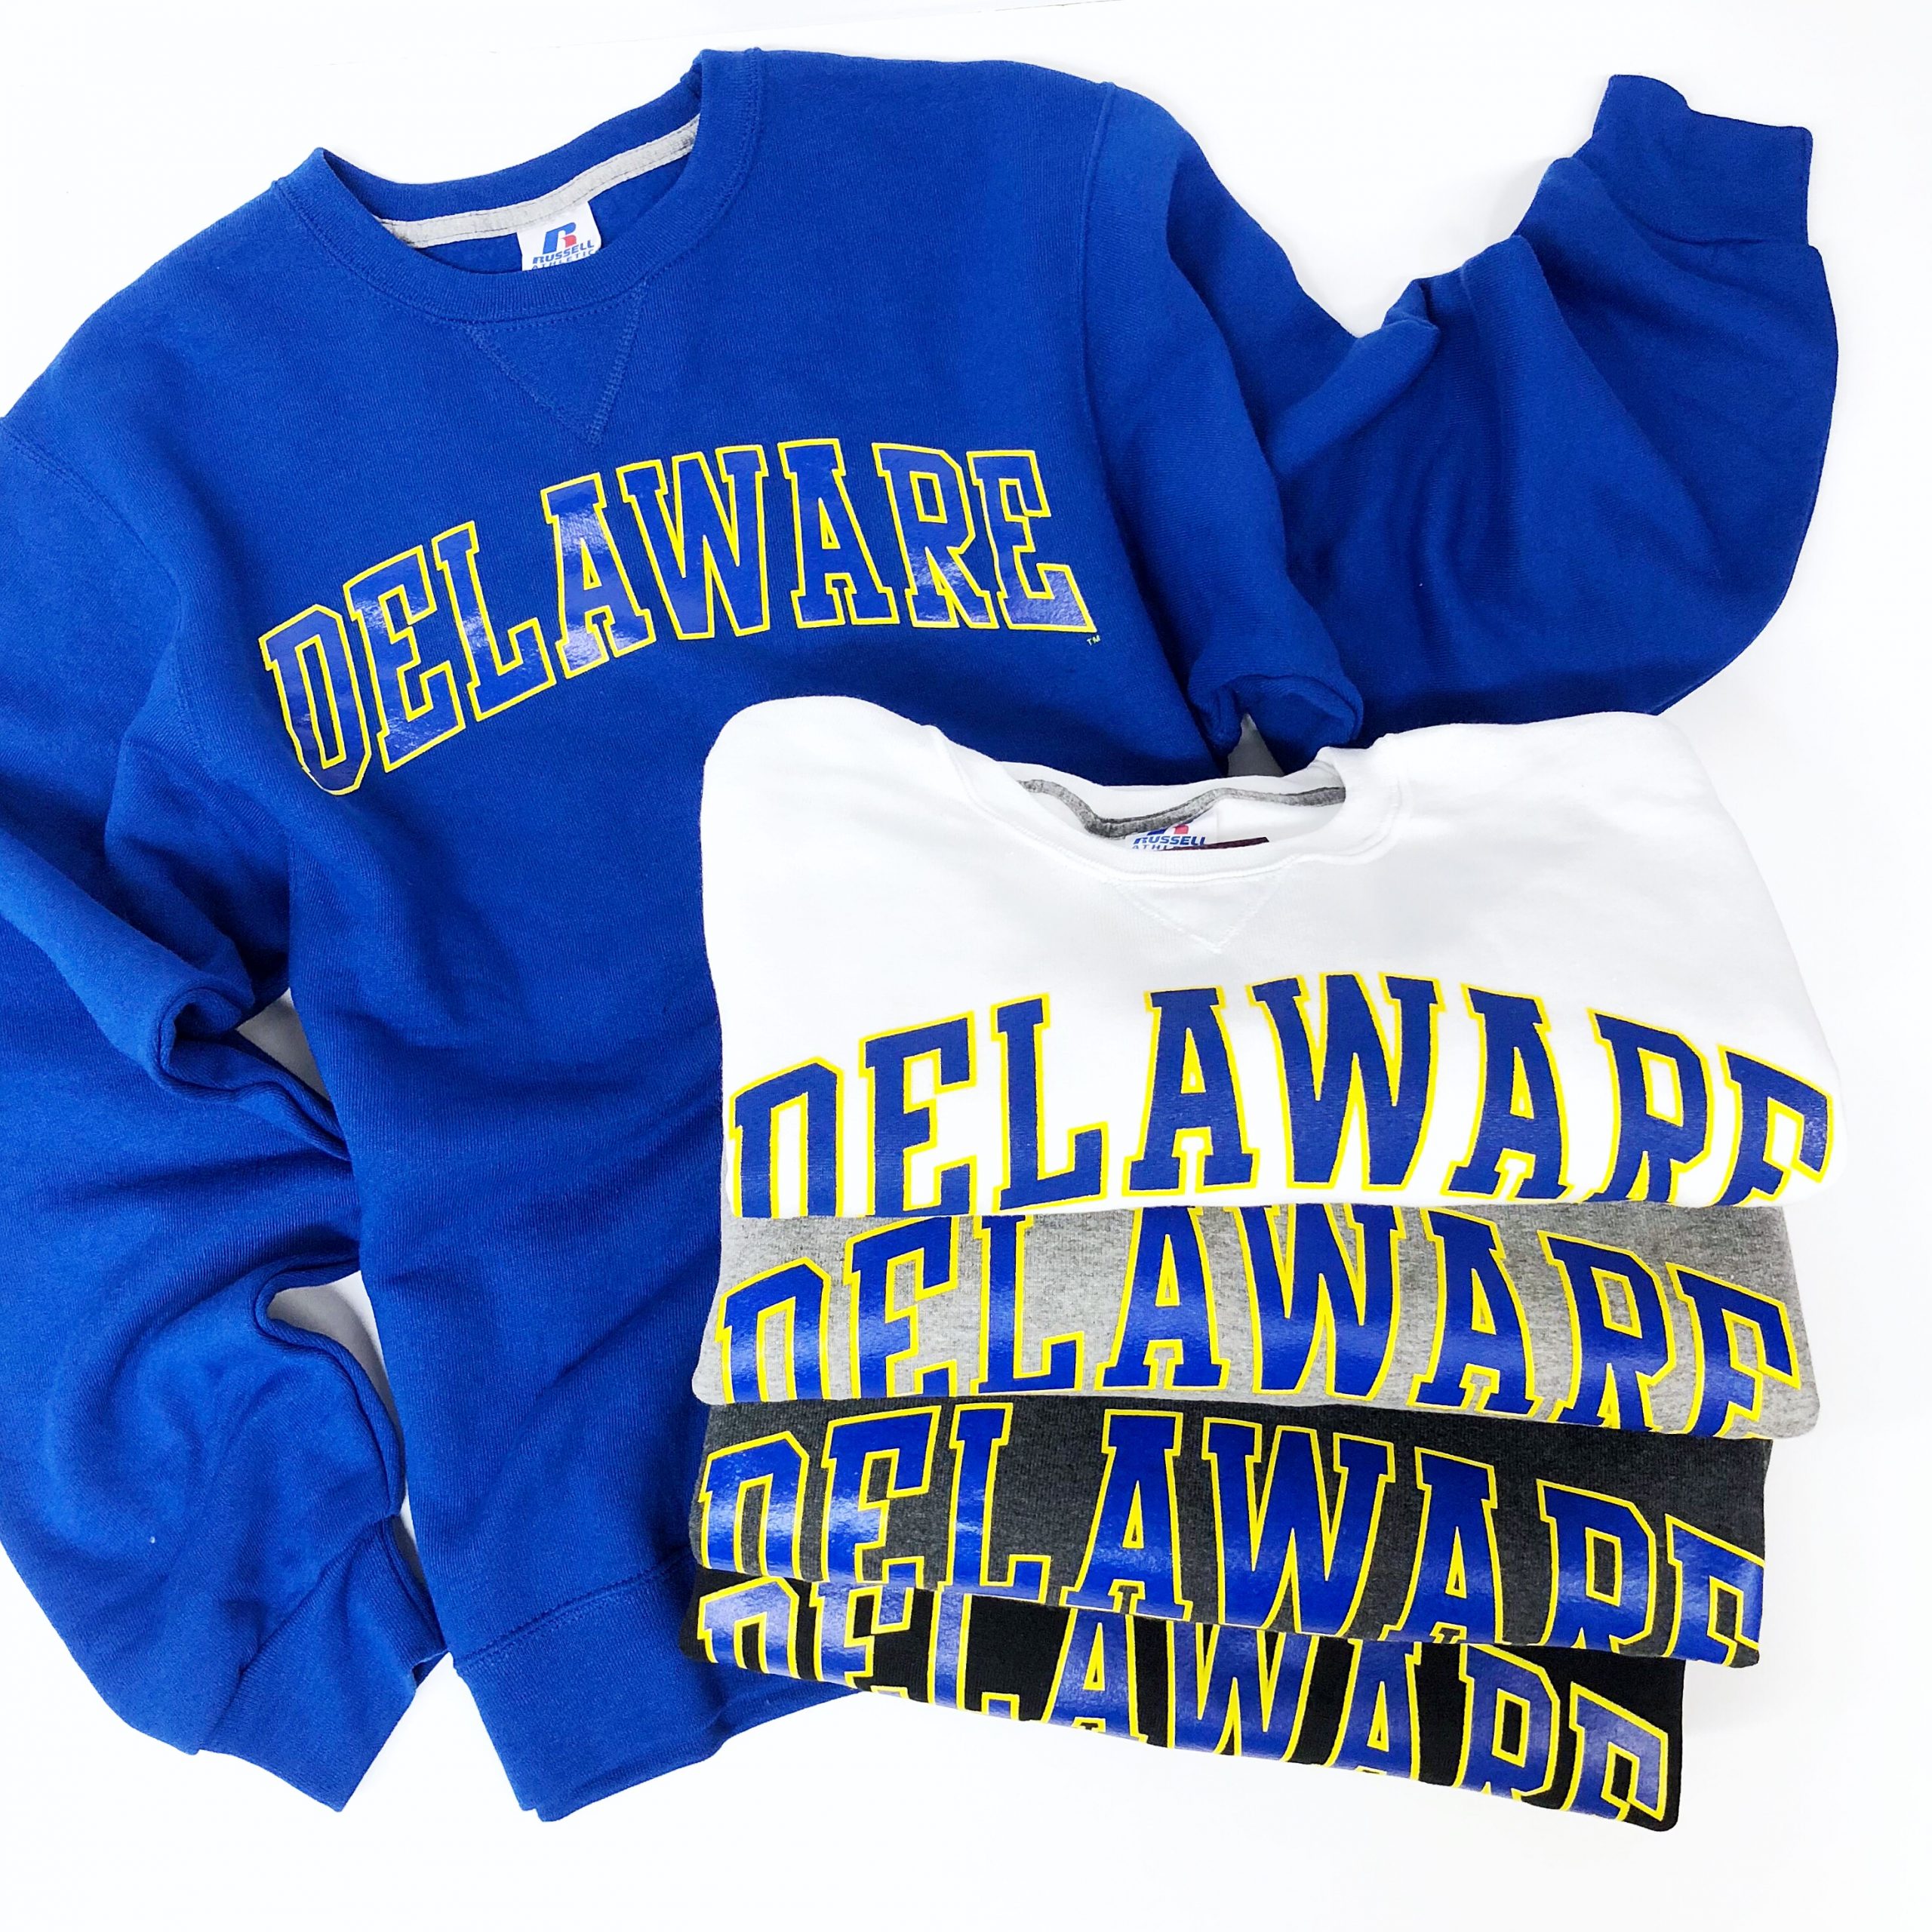 University of Delaware Alumni UD Crew Neck Sweatshirt - Oatmeal